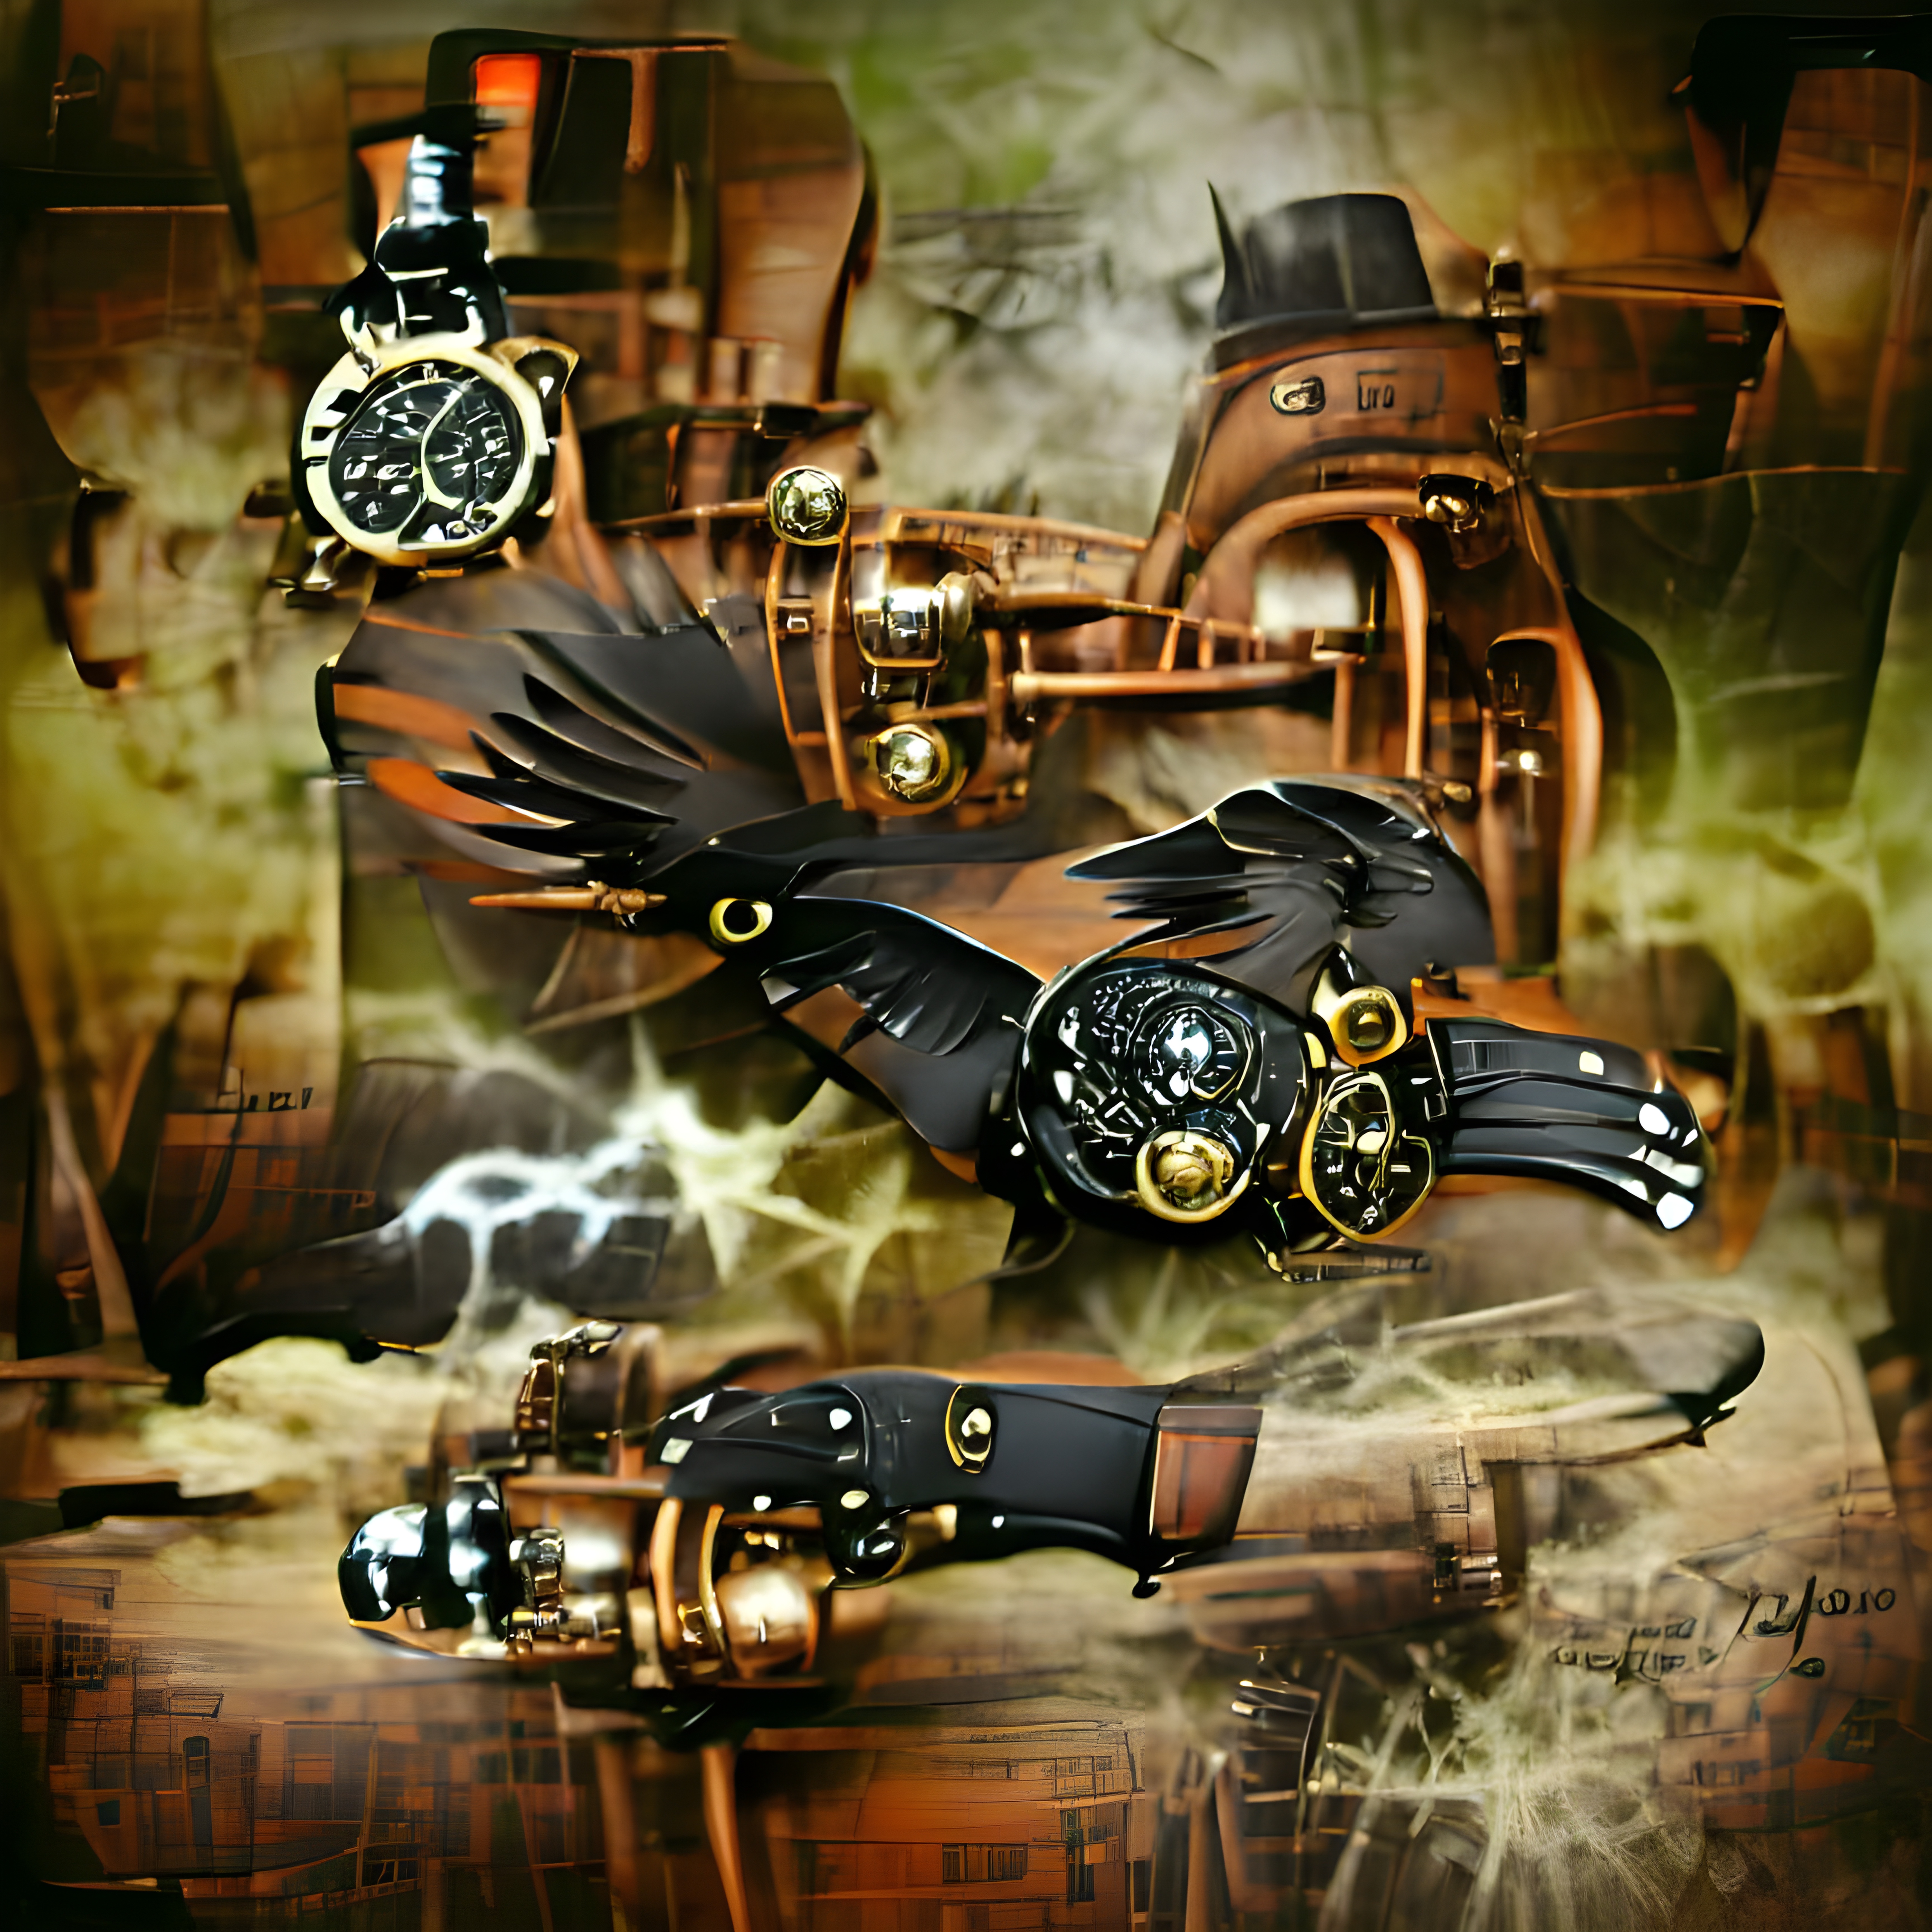 The Vigilant Hawk